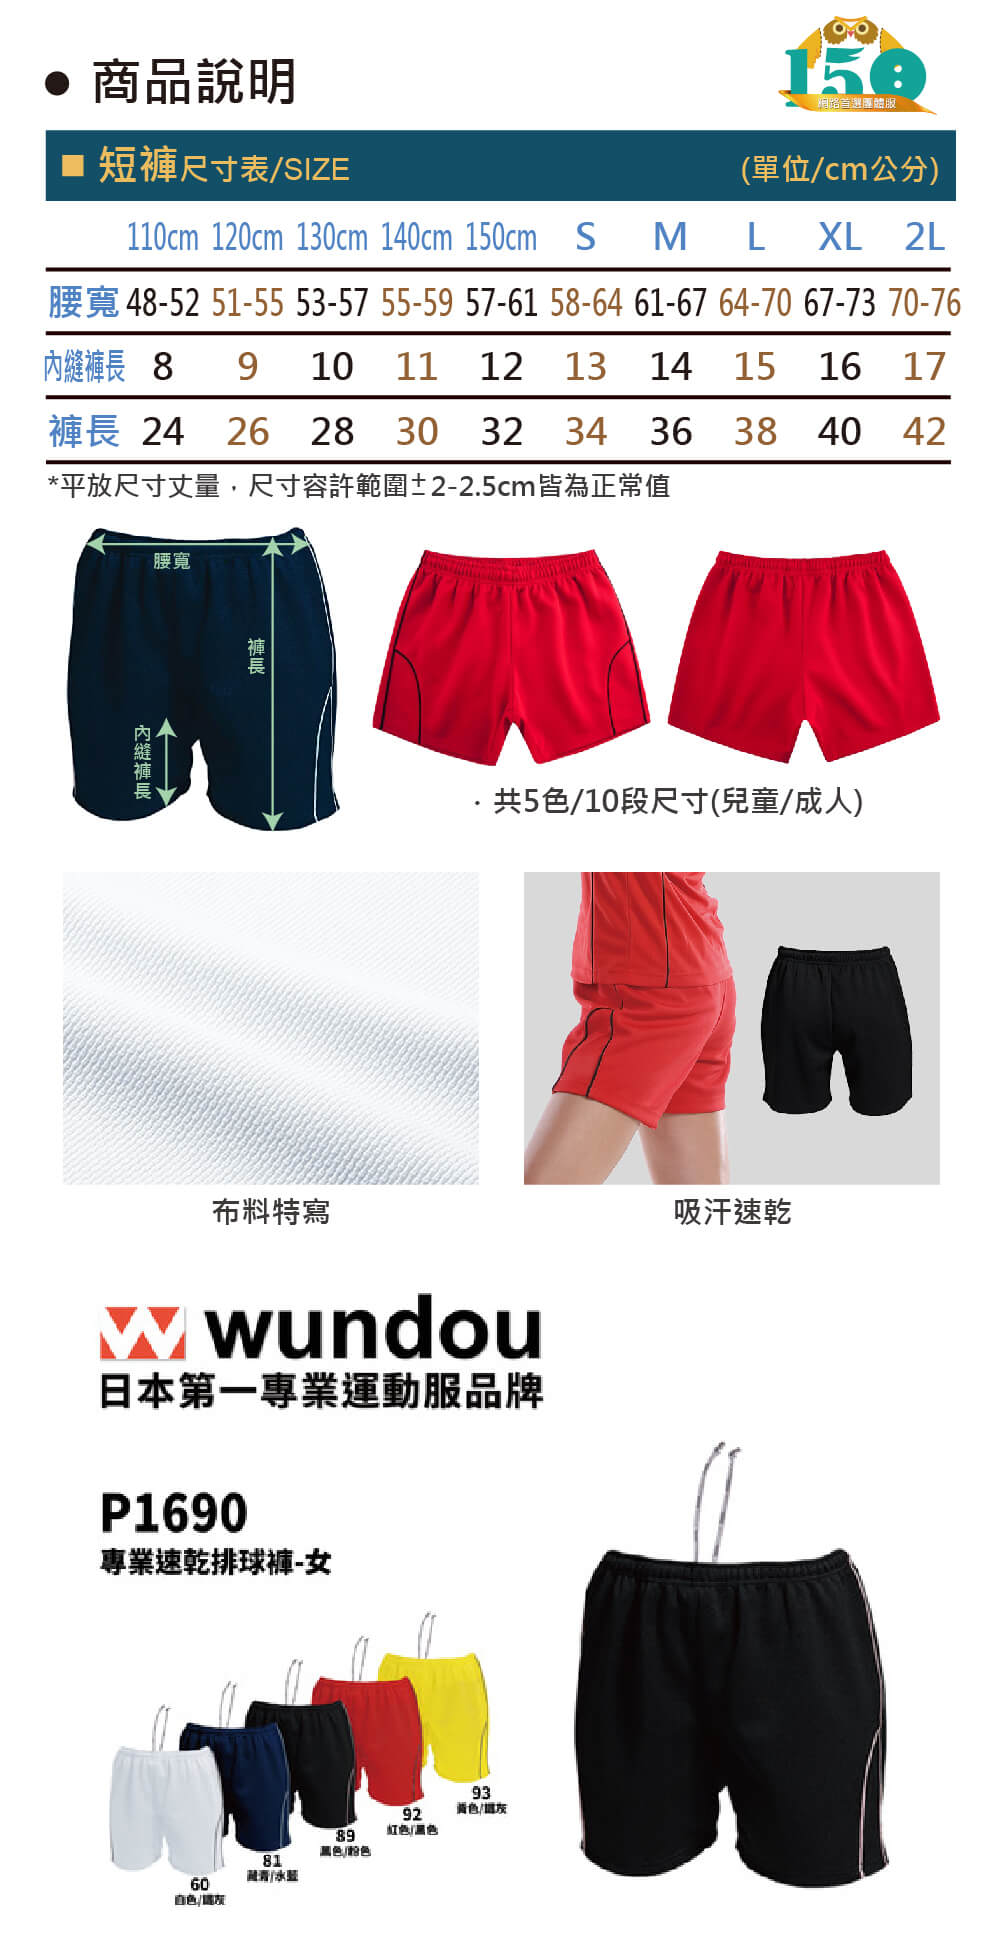 (預購款)WD-P1690 專業速乾女款排球褲說明